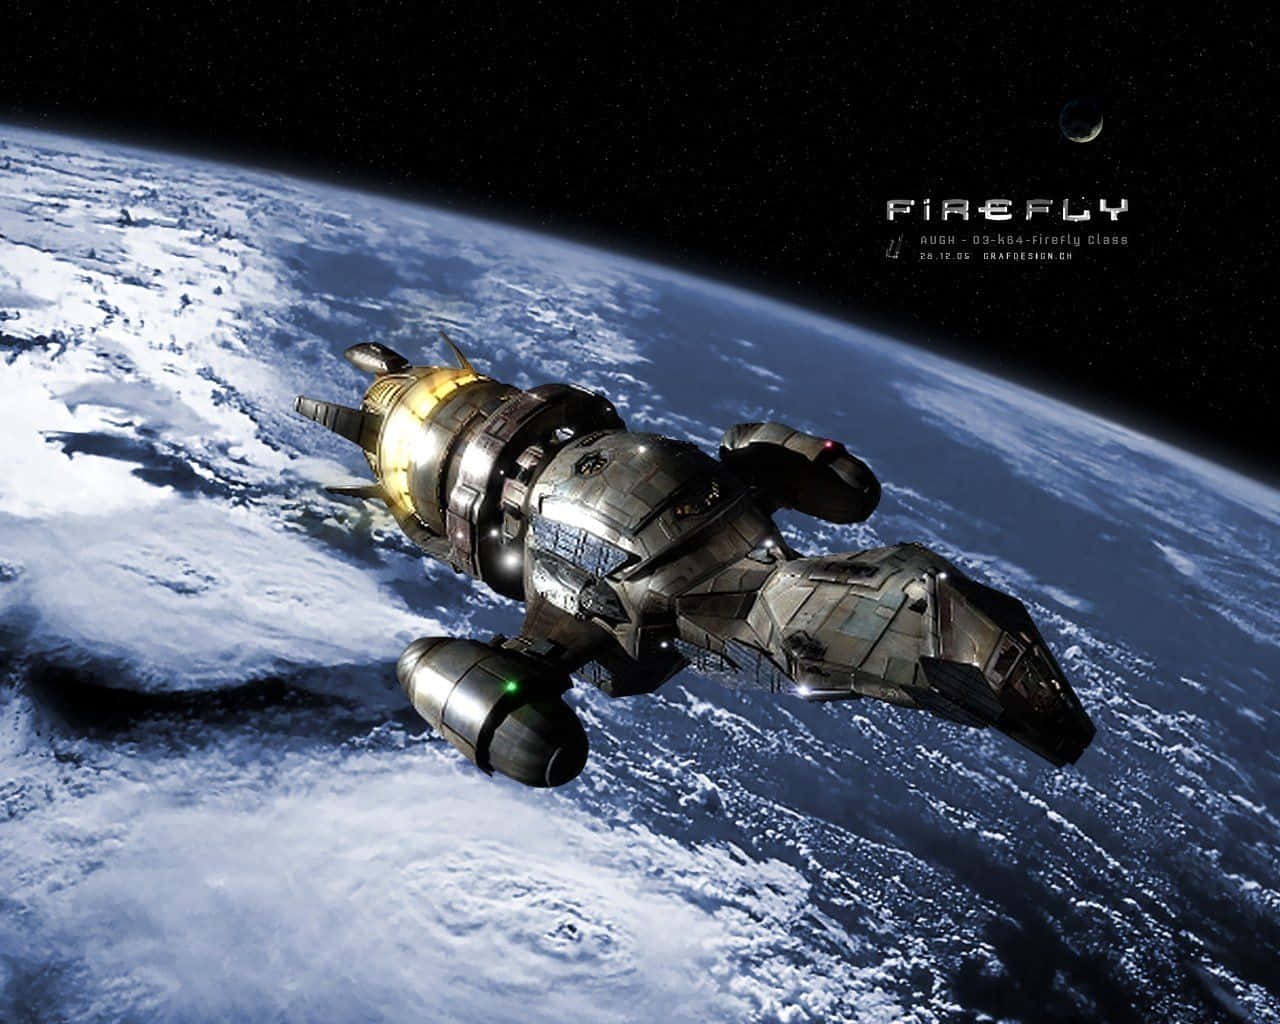 Drage ud på et episk Sci-Fi-eventyr med besætningen Firefly Wallpaper